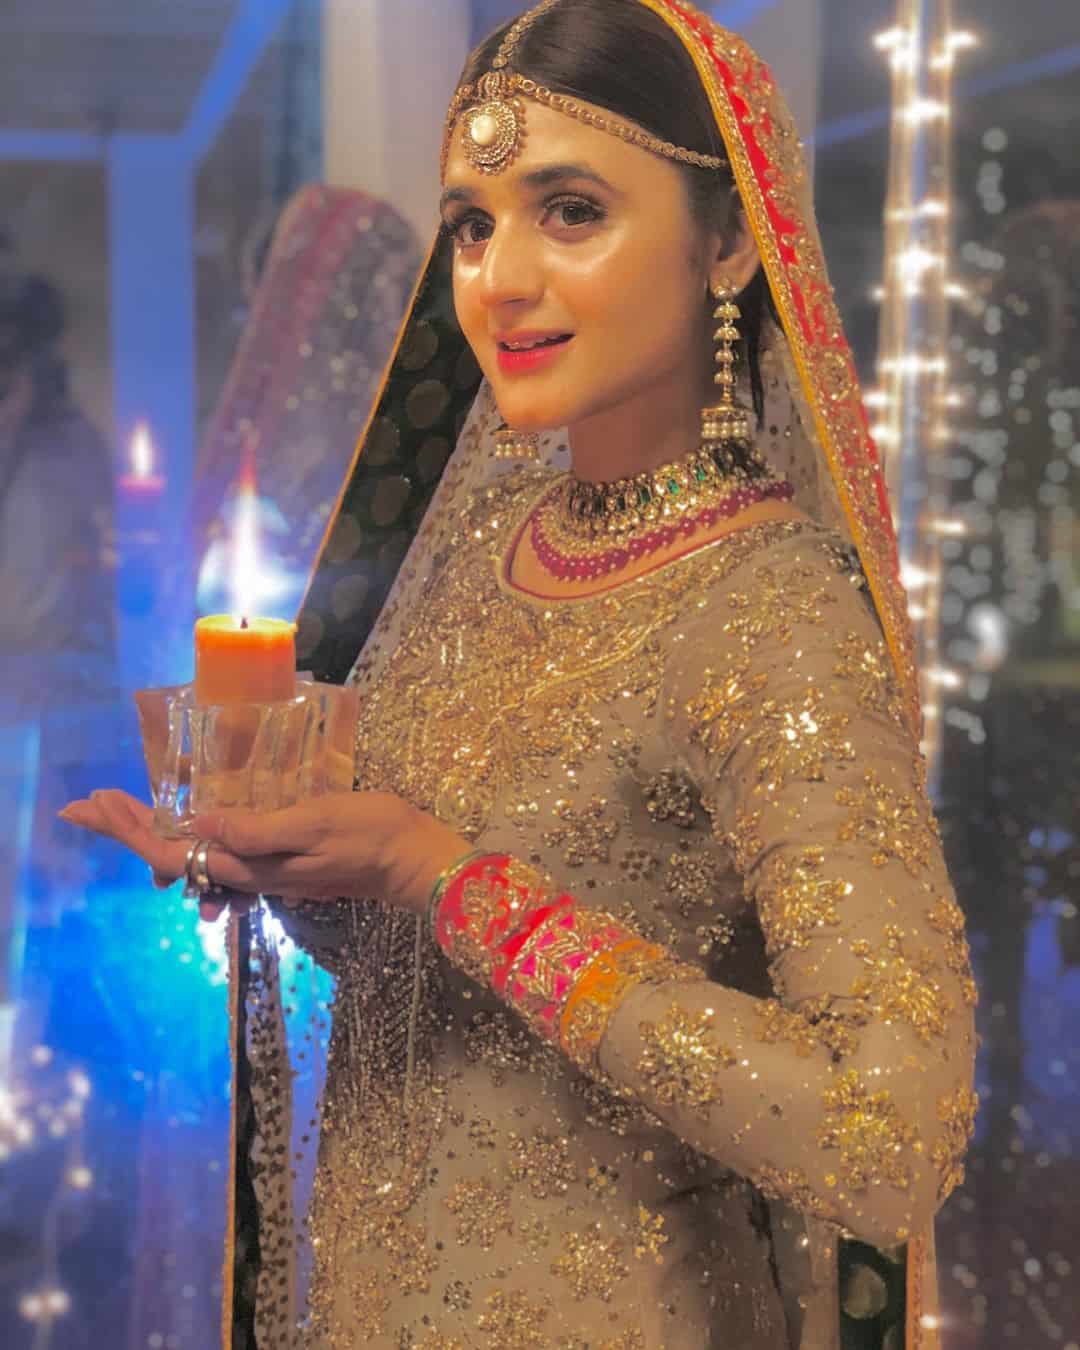 Beautiful Actress Hira Mani's Latest Clicks as Bride